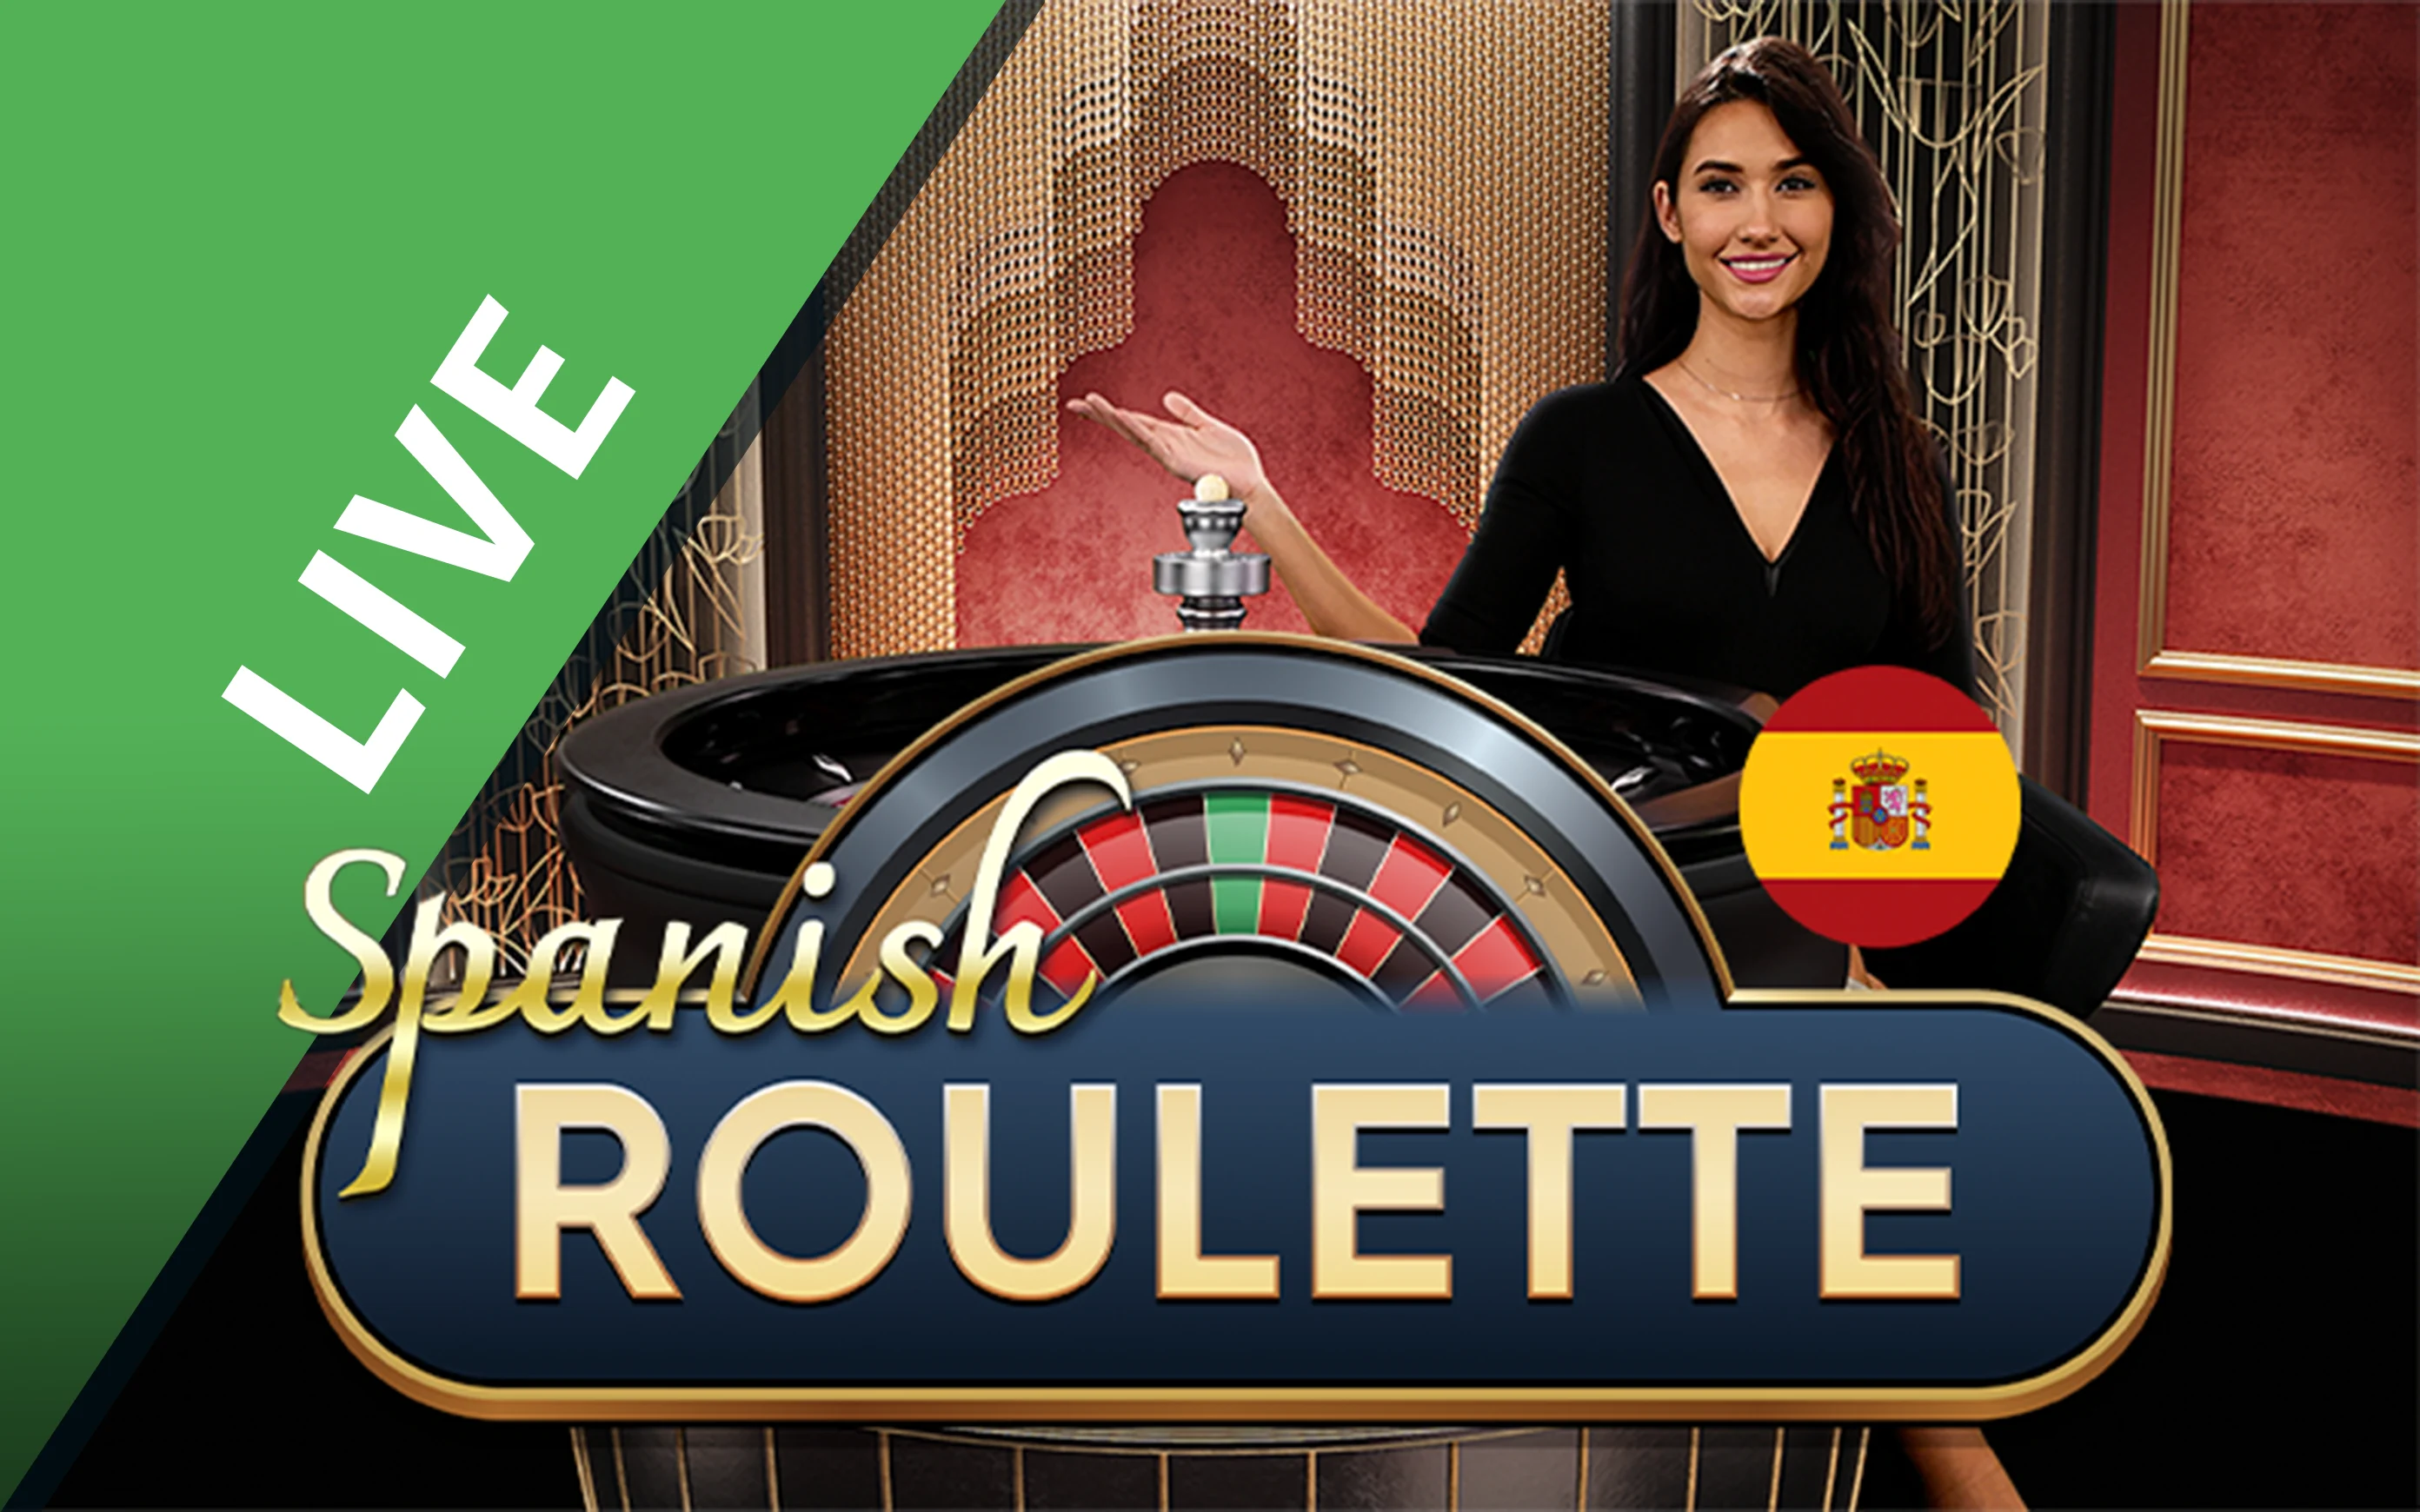 Starcasino.be online casino üzerinden Spanish Roulette oynayın